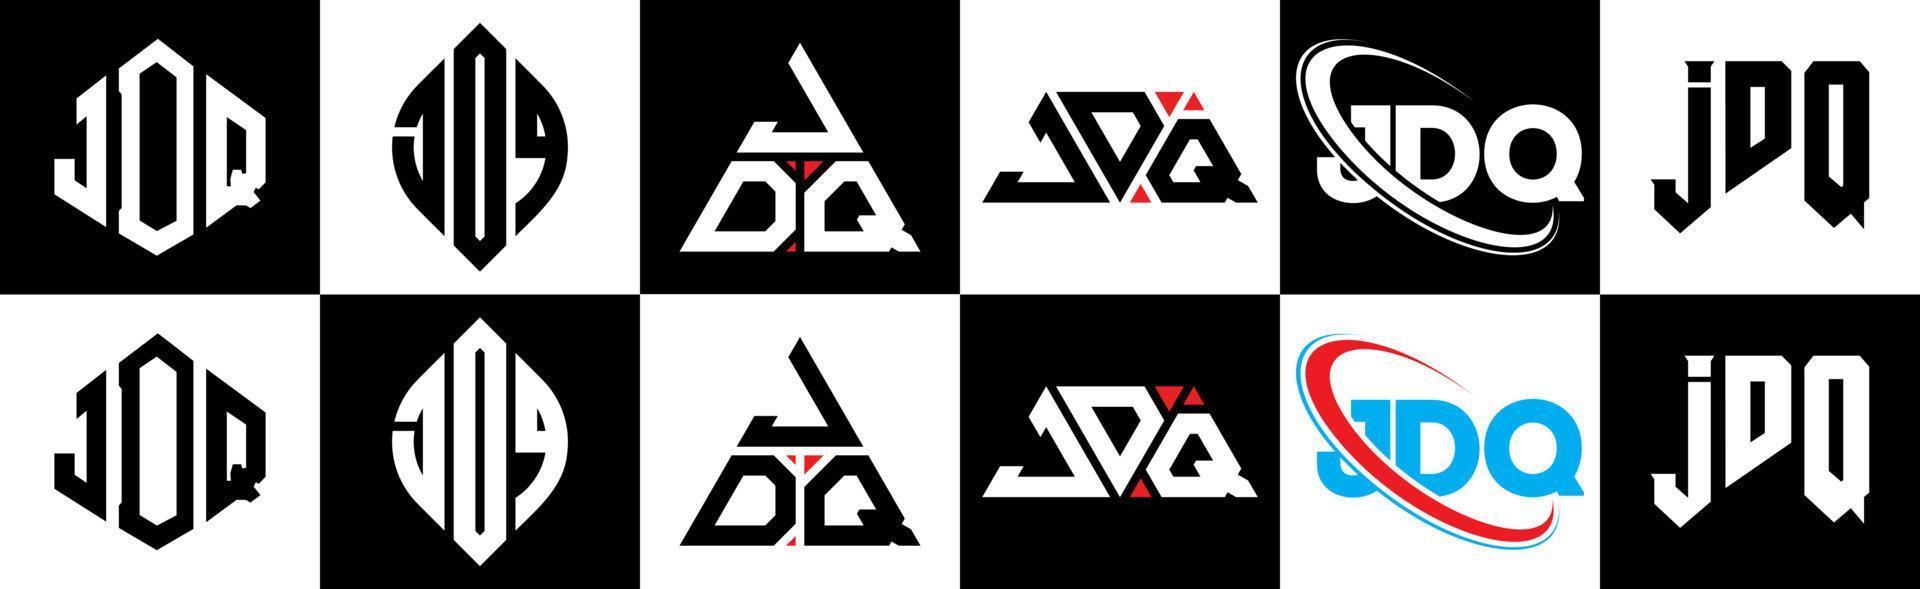 création de logo de lettre jdq en six styles. polygone jdq, cercle, triangle, hexagone, style plat et simple avec logo de lettre de variation de couleur noir et blanc dans un plan de travail. logo jdq minimaliste et classique vecteur